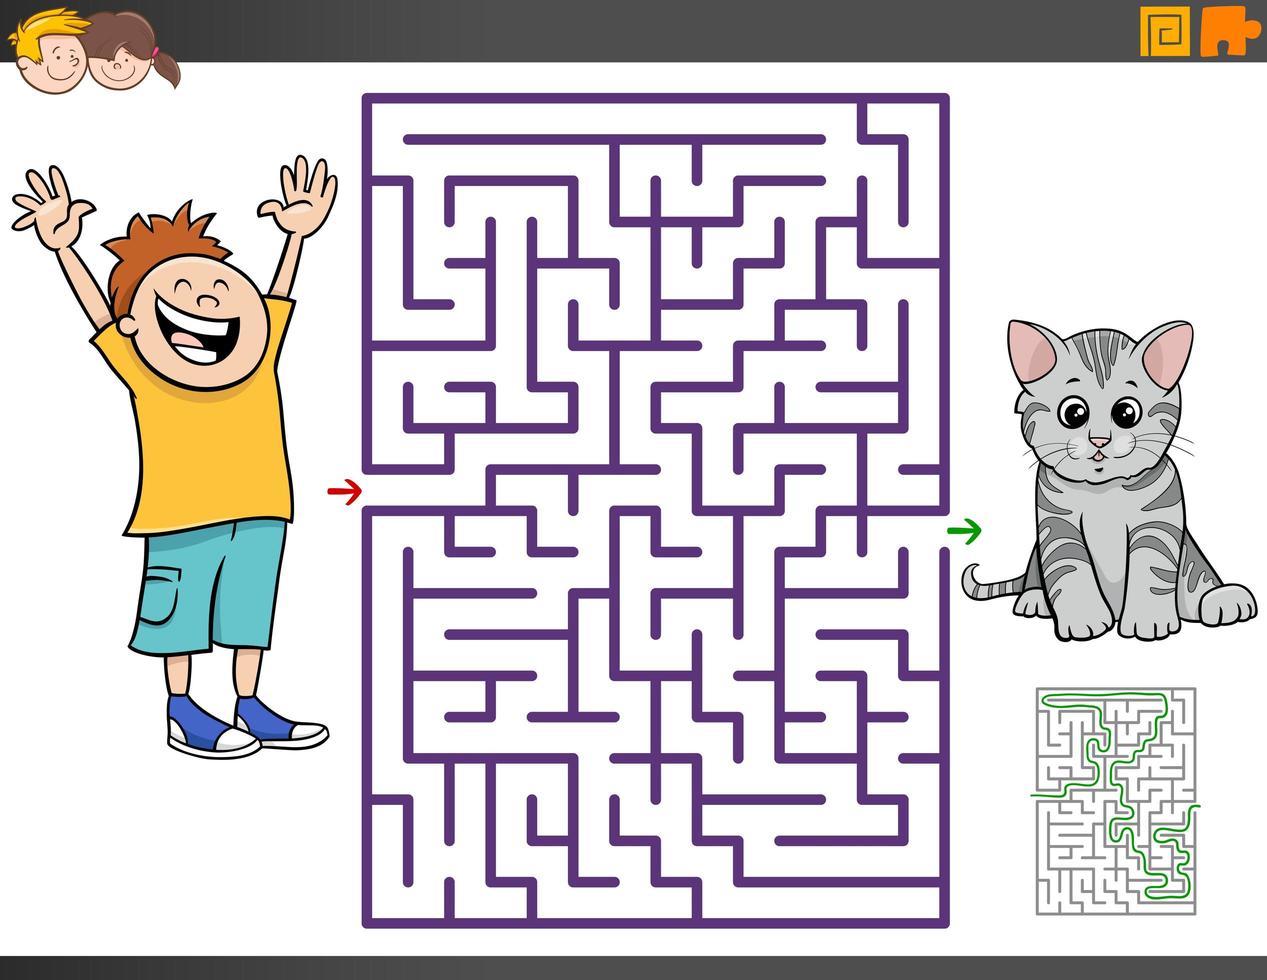 jogo educativo de labirinto com menina e menino na festa à fantasia 2042238  Vetor no Vecteezy